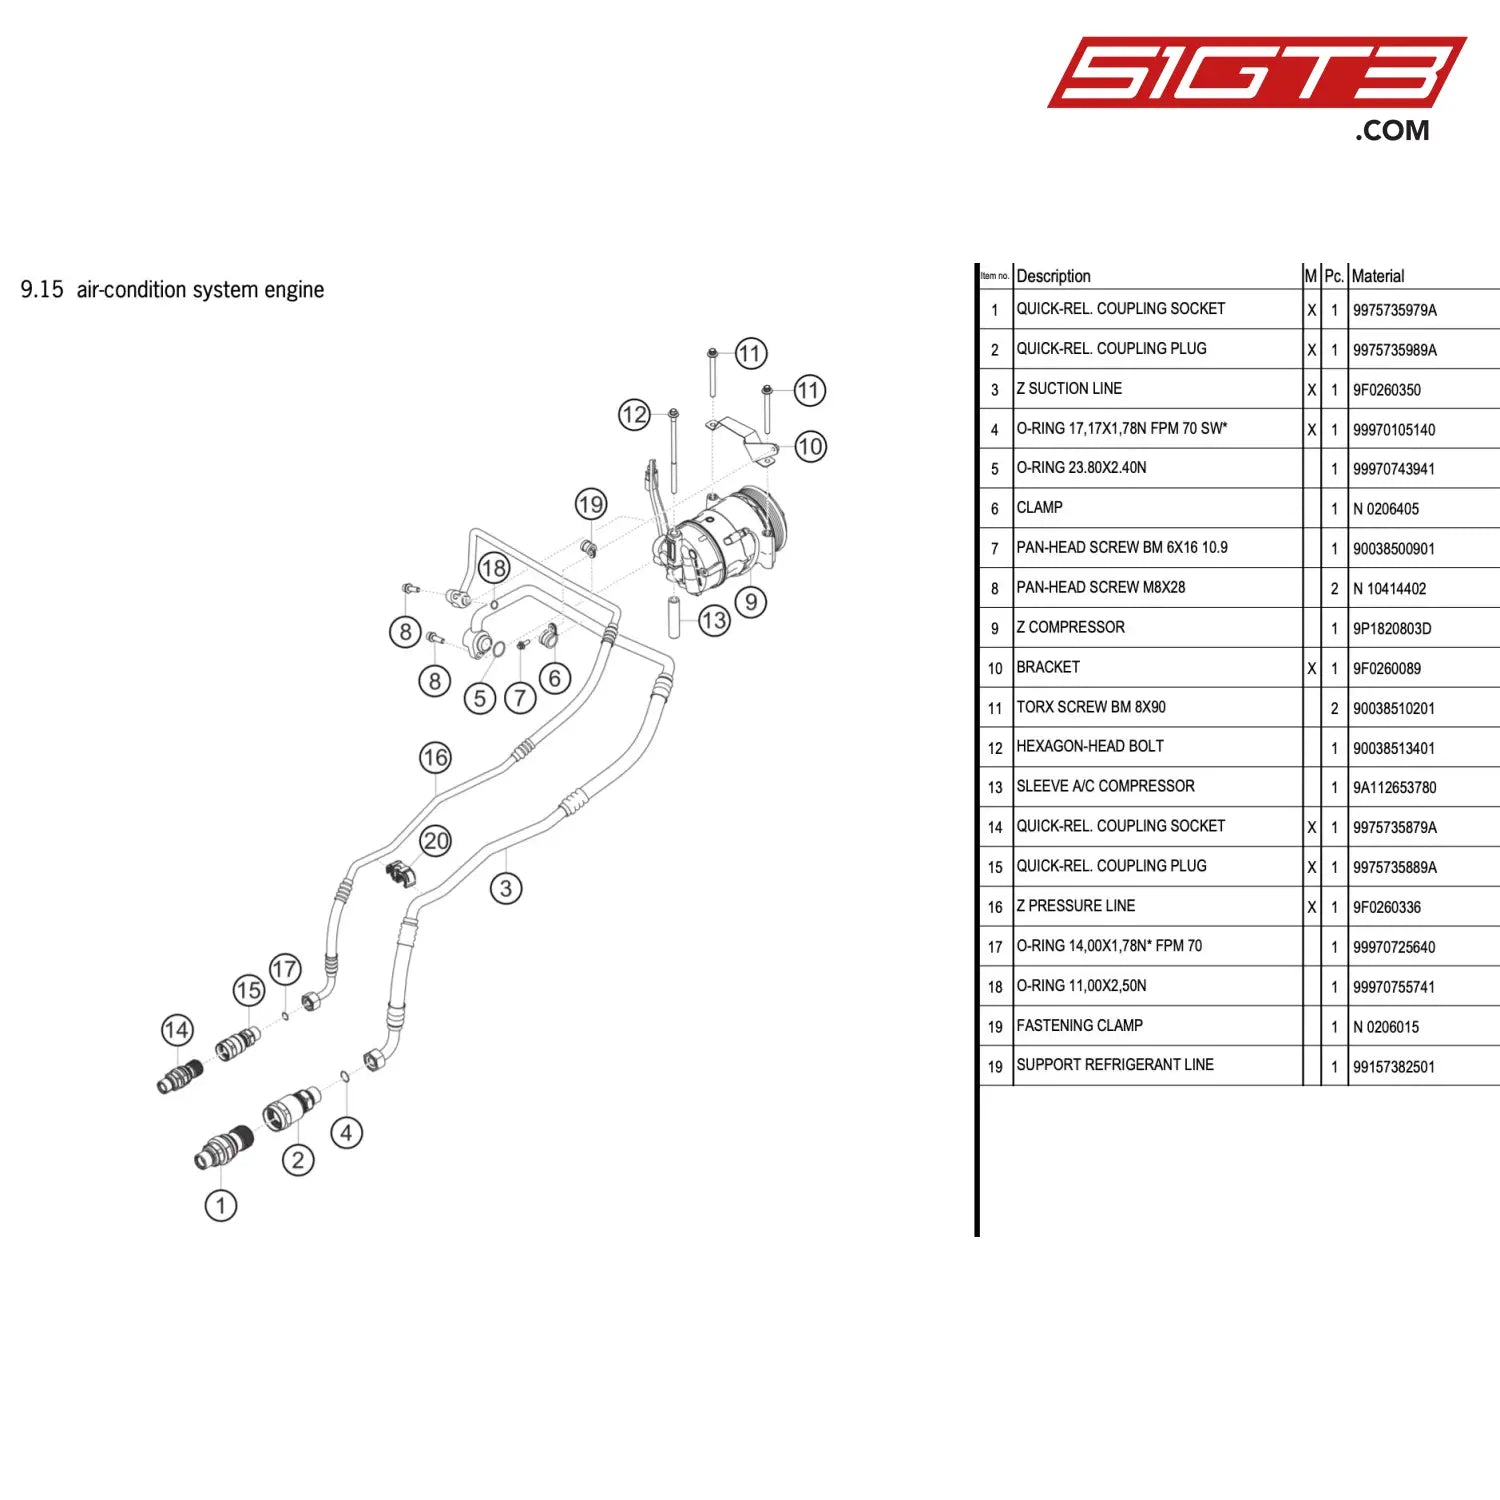 Z Suction Line - 9F0260350 [Porsche 911 Gt3 R Type 991 (Gen 2)] Air-Condition System Engine